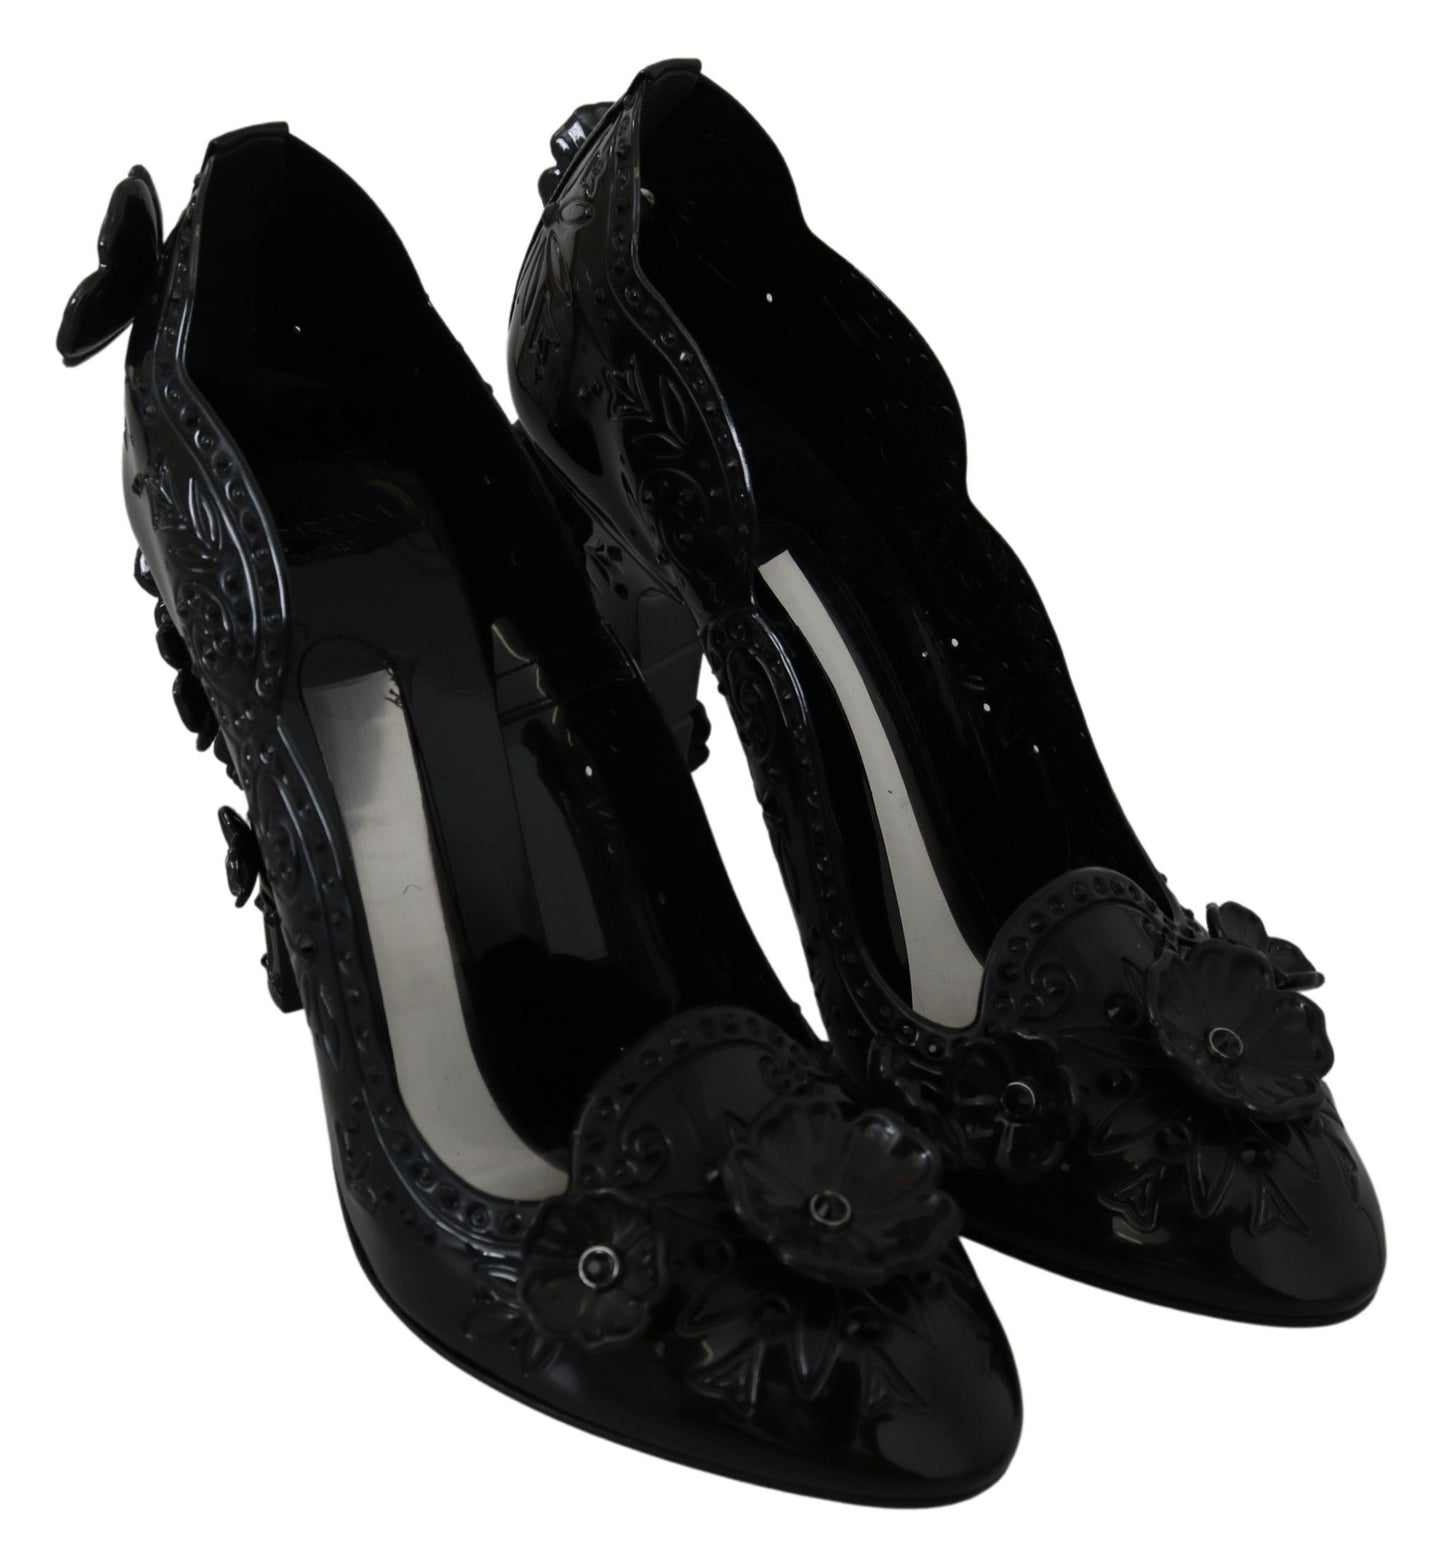 Dolce & Gabbana Schwarz Blumenkristall Cinderella Heels Schuhe